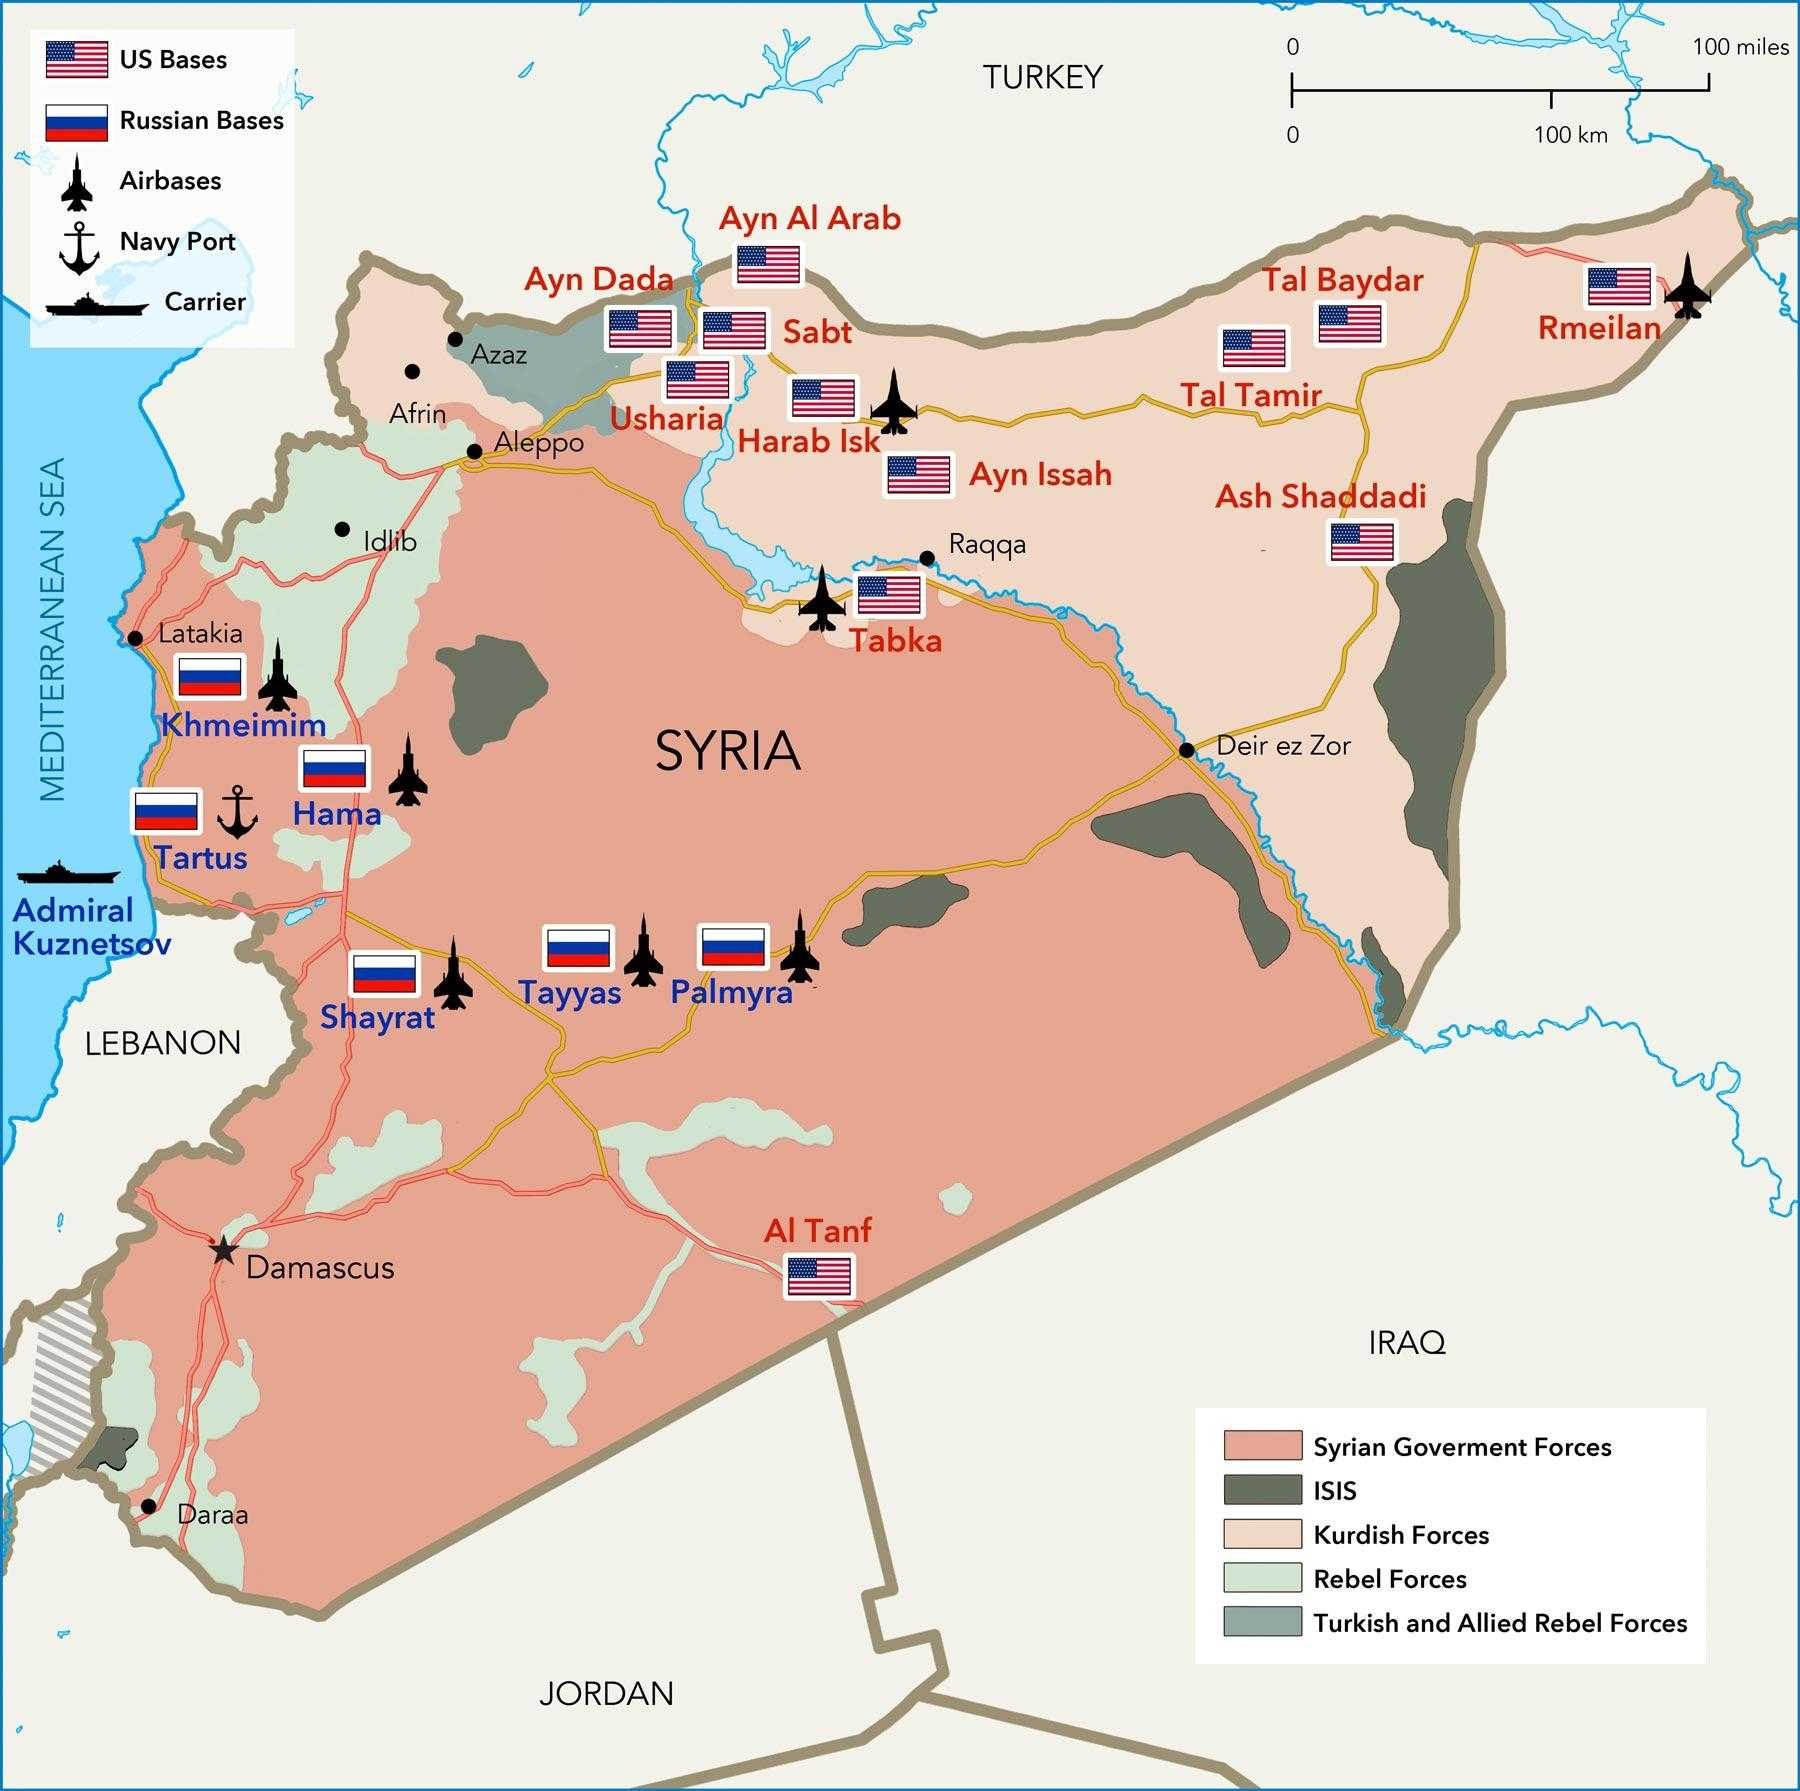 Suriye'de Rusya'nın askeri üsleri ve ABD'nin boşaltmaya hazırlandığı (Tenef hariç) üsler.